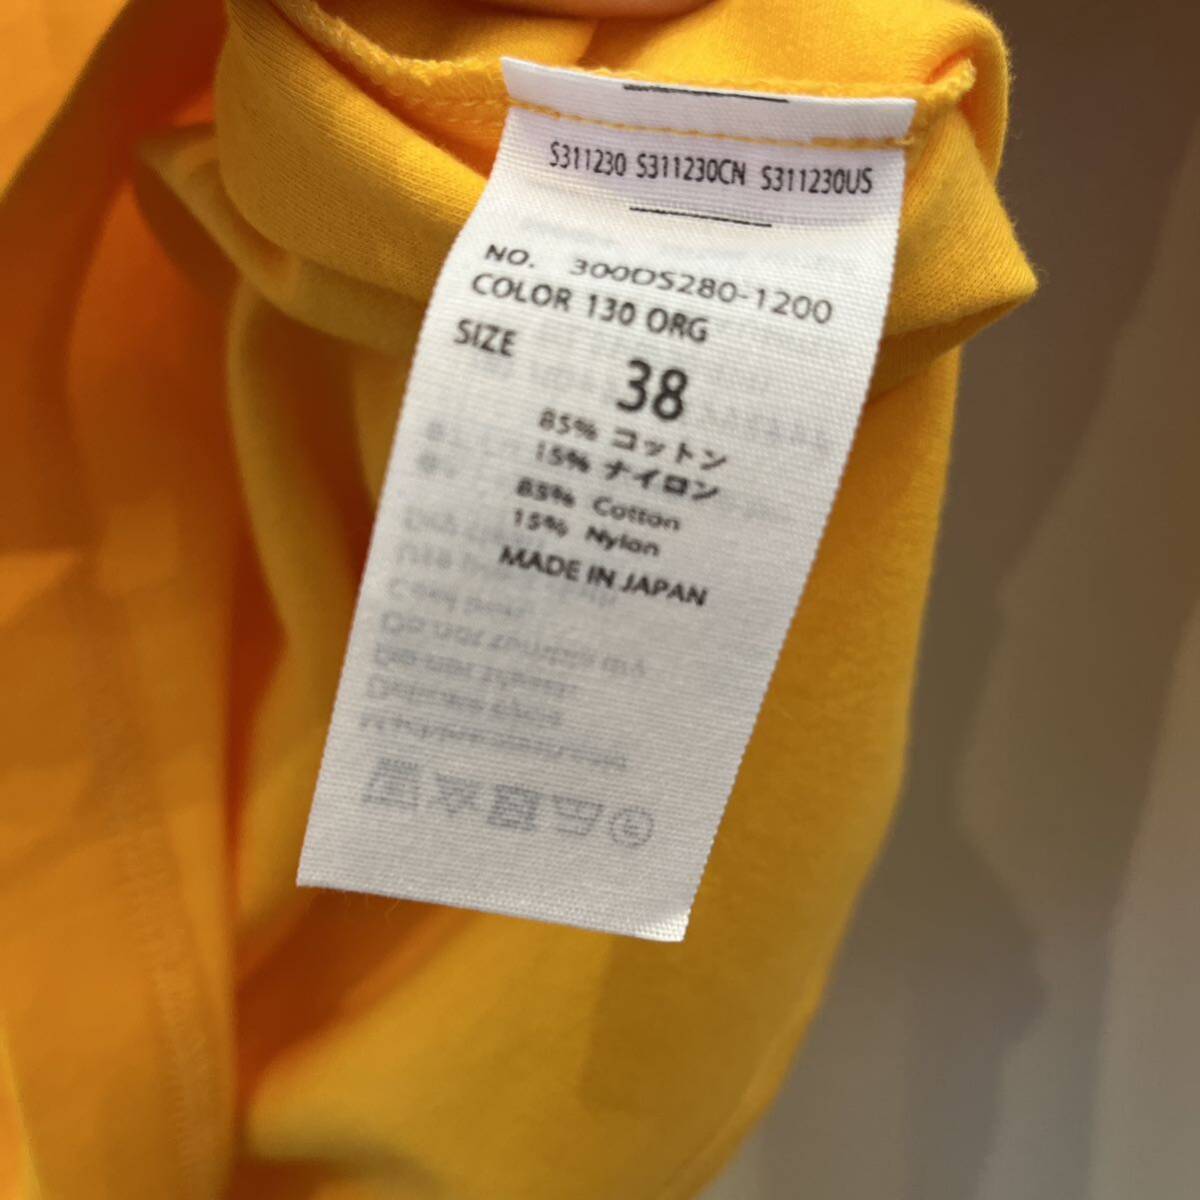 新品未使用タグ付き ENFOLD クルーネック カットソー Tシャツ オレンジ エンフォルド半袖Tシャツ 